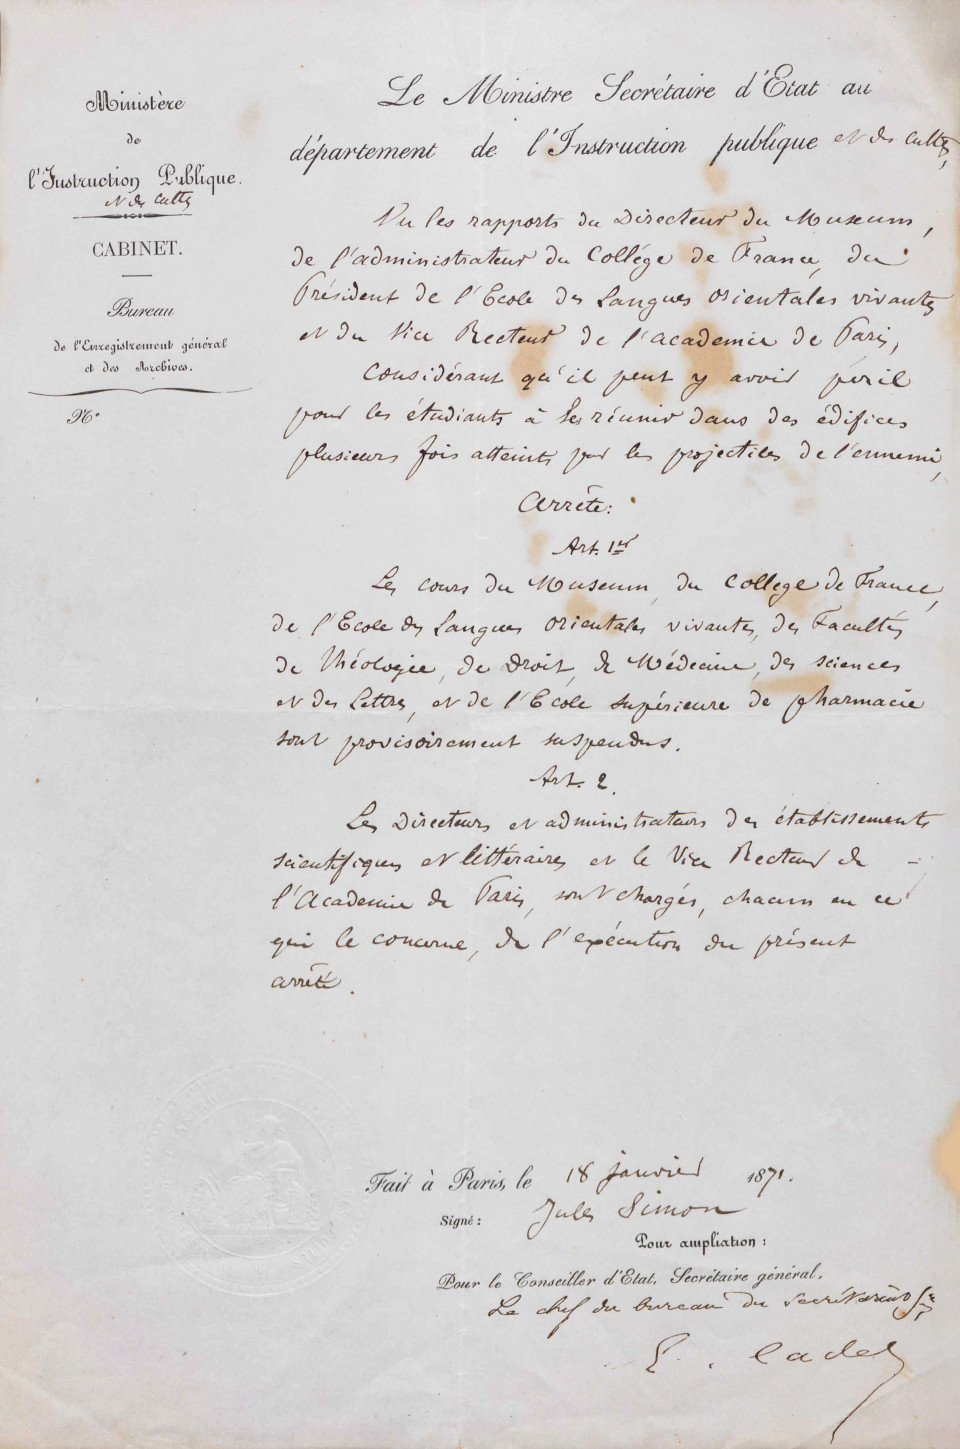 Arrêté du ministère de l’Instruction publique du 18 janvier 1871, 62/AJ/1, Archives nationales de Pierrefitte.